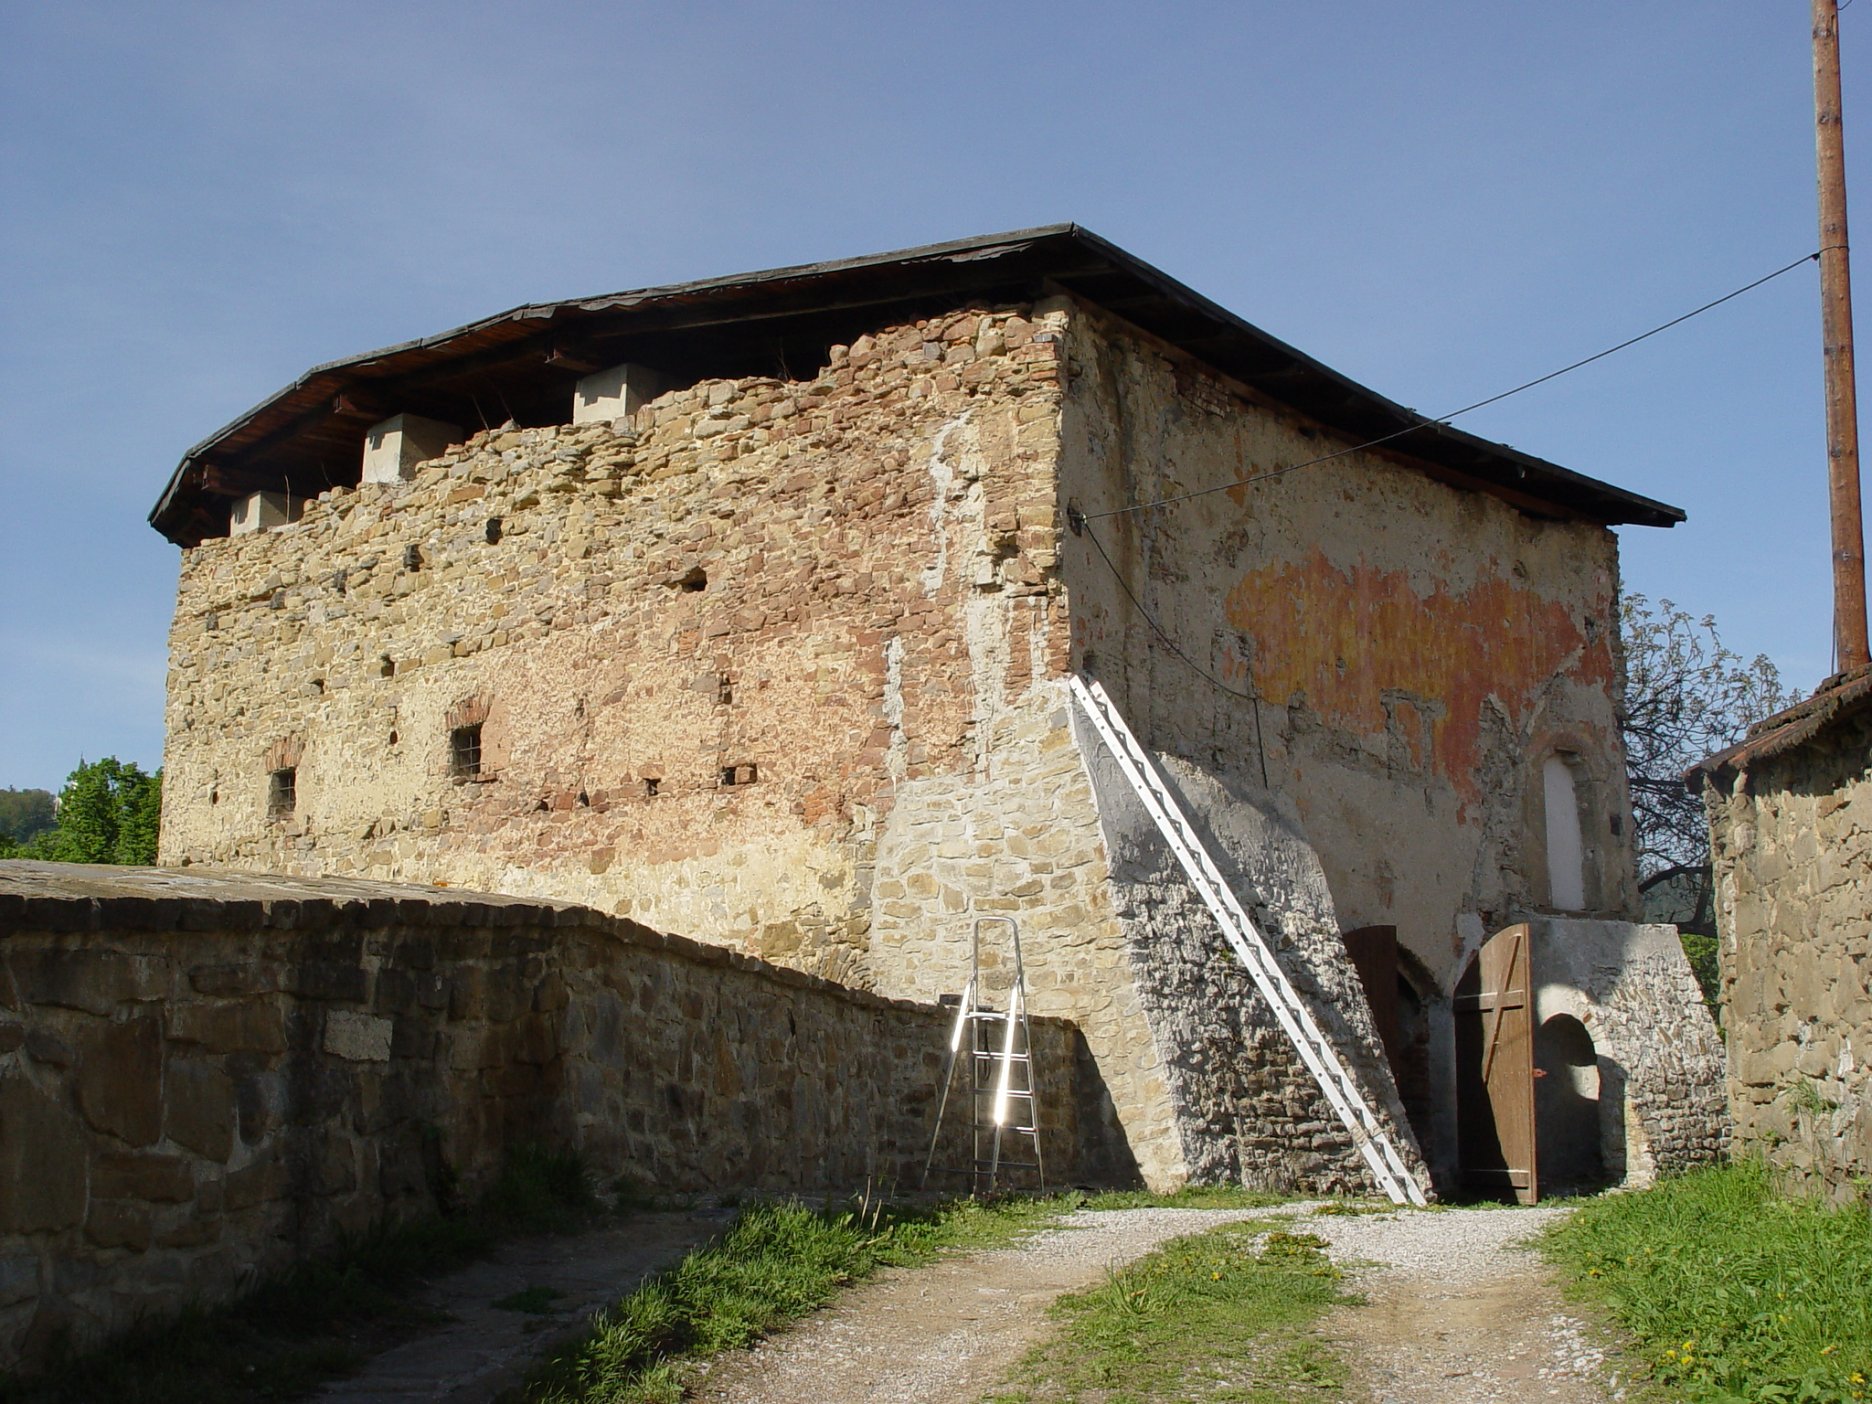 Pohľad z hradobnej uličky - stav pred obnovou